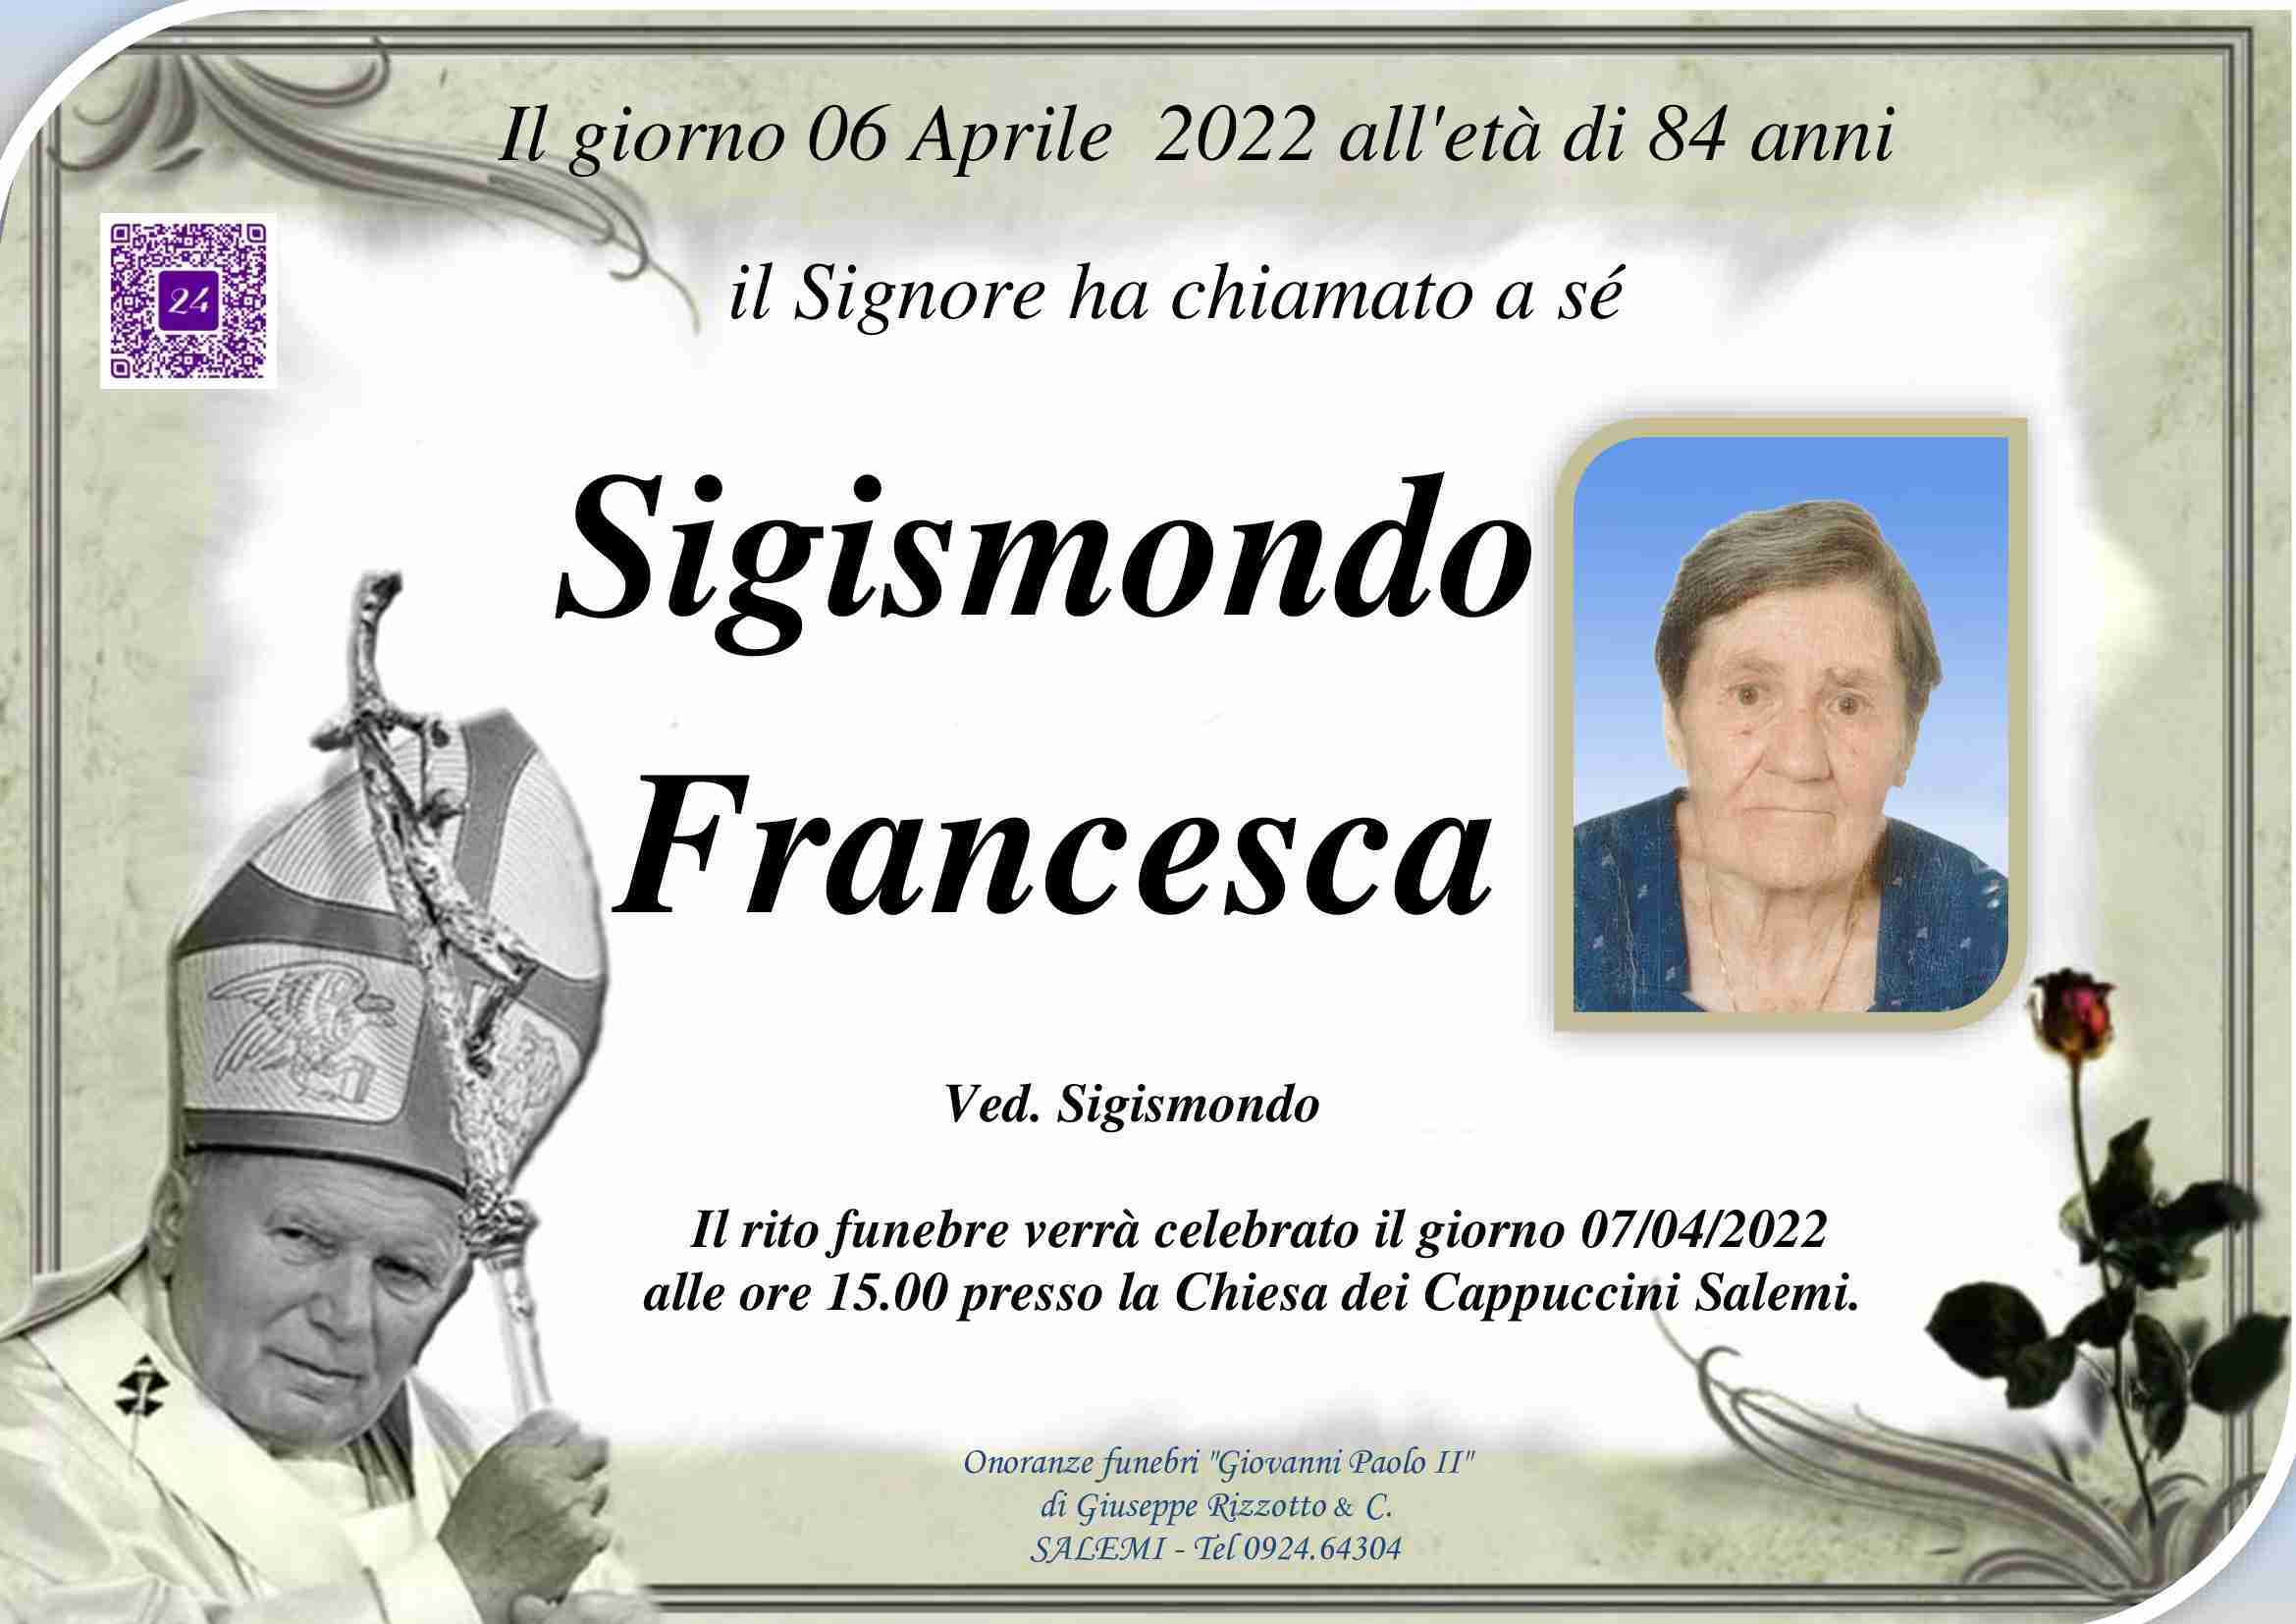 Francesca Sigismondo